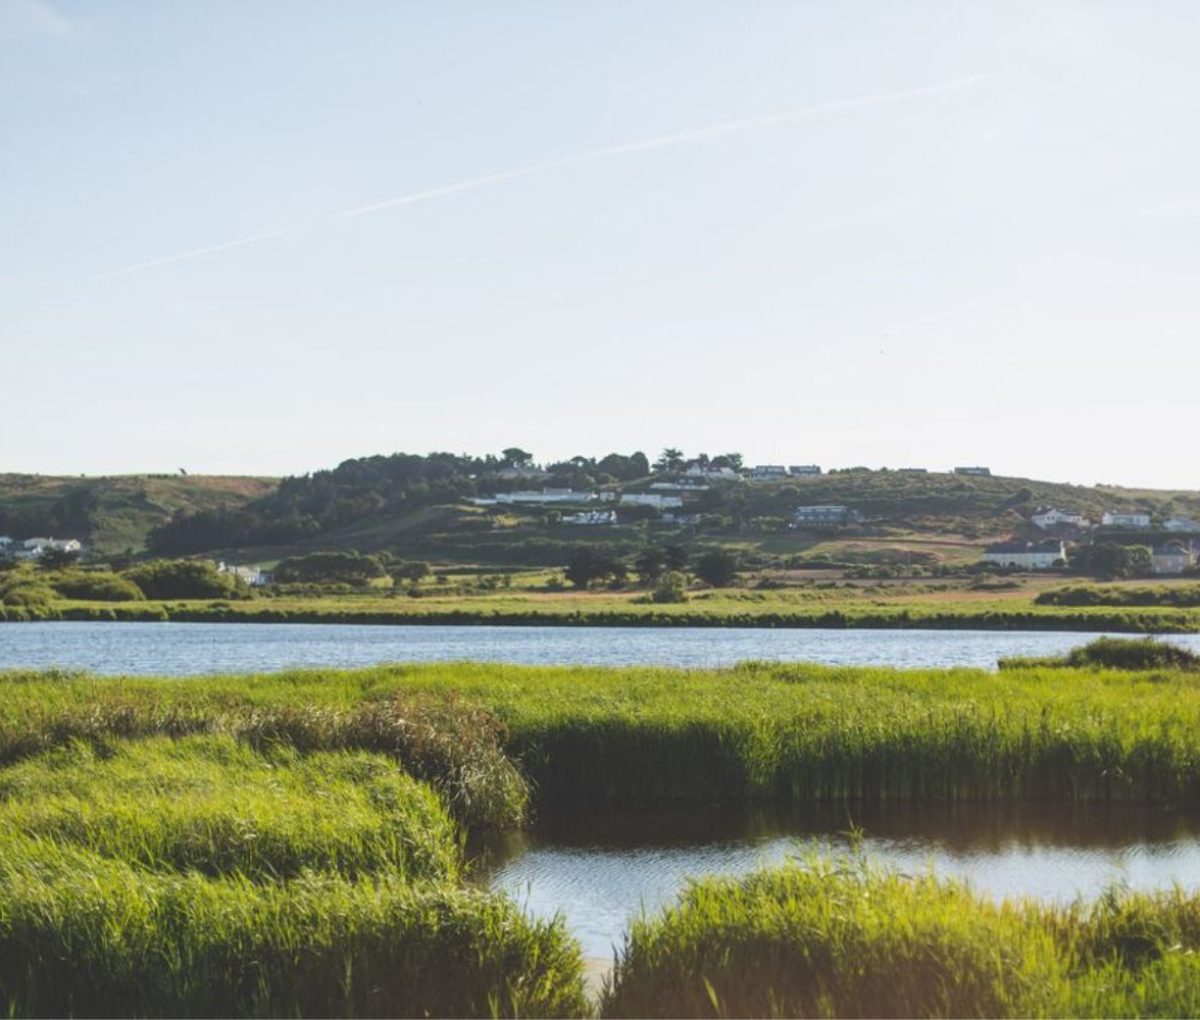 St. Ouens Pond and wetlands, St. Ouens Bay, Jersey